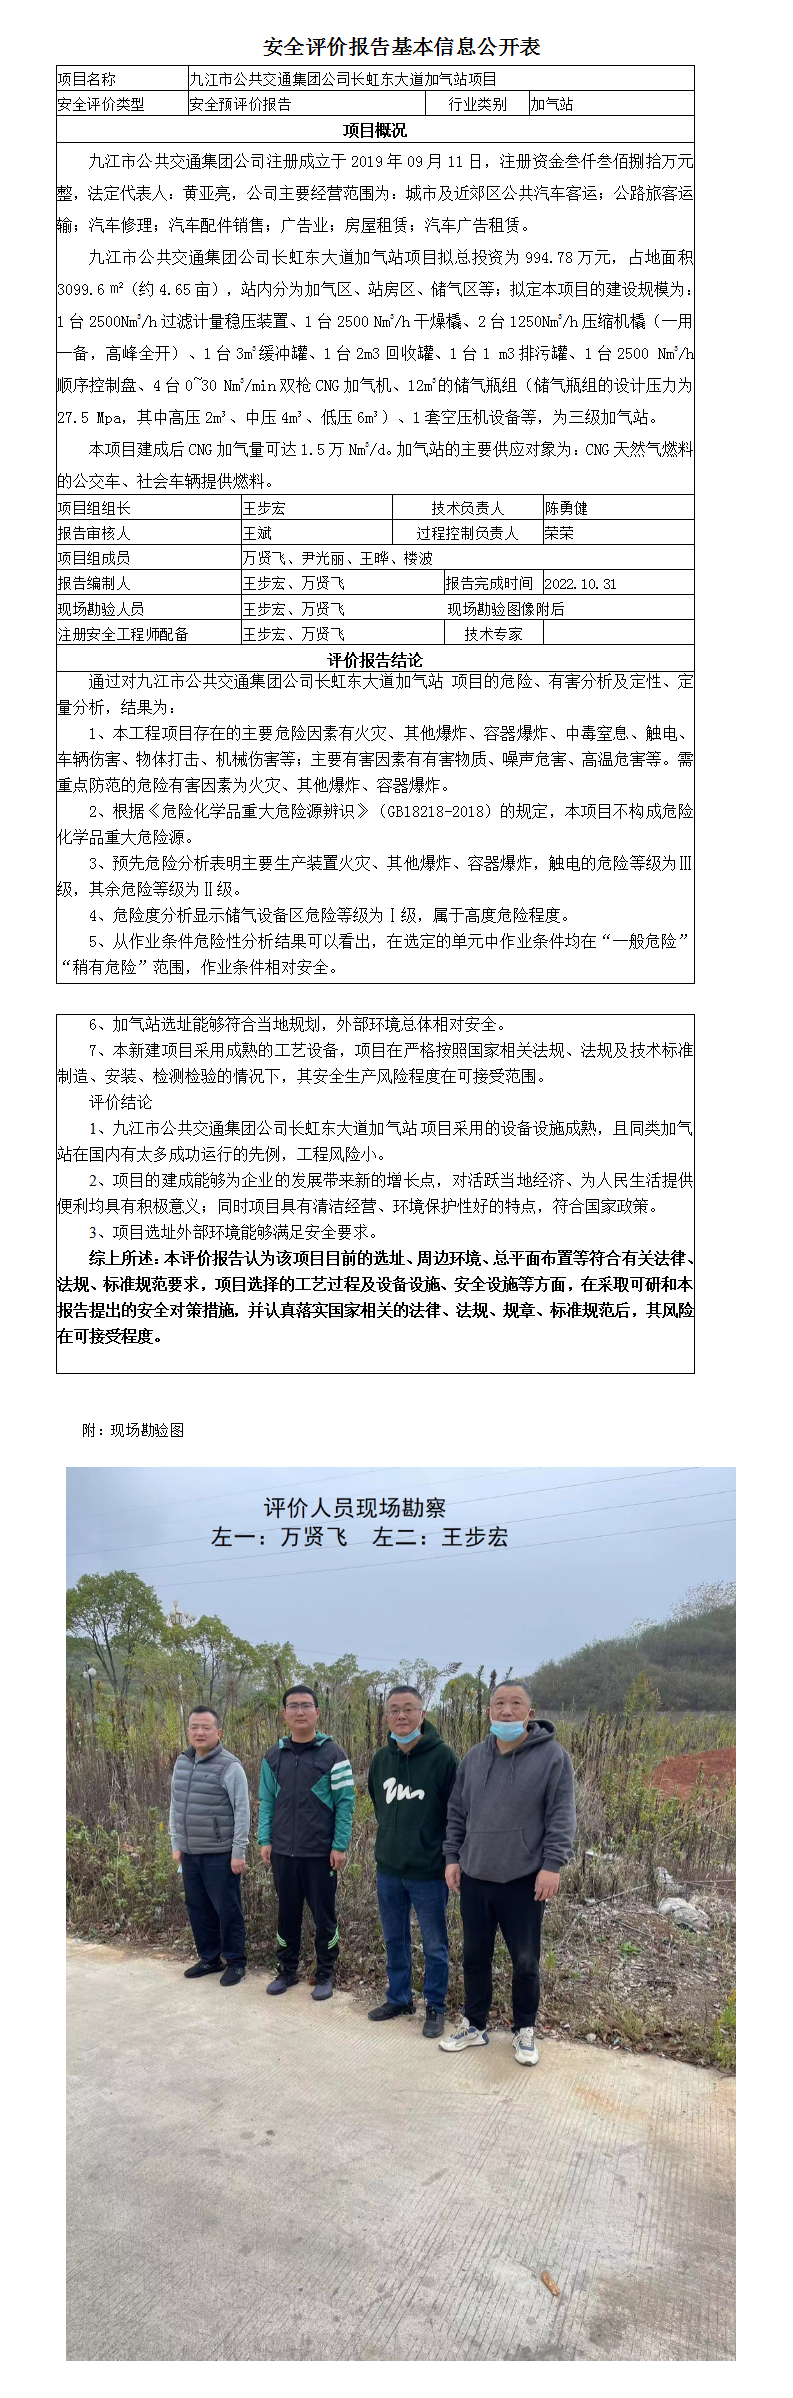 安全评价报告基本信息公开表（九江市公共交通集团公司）